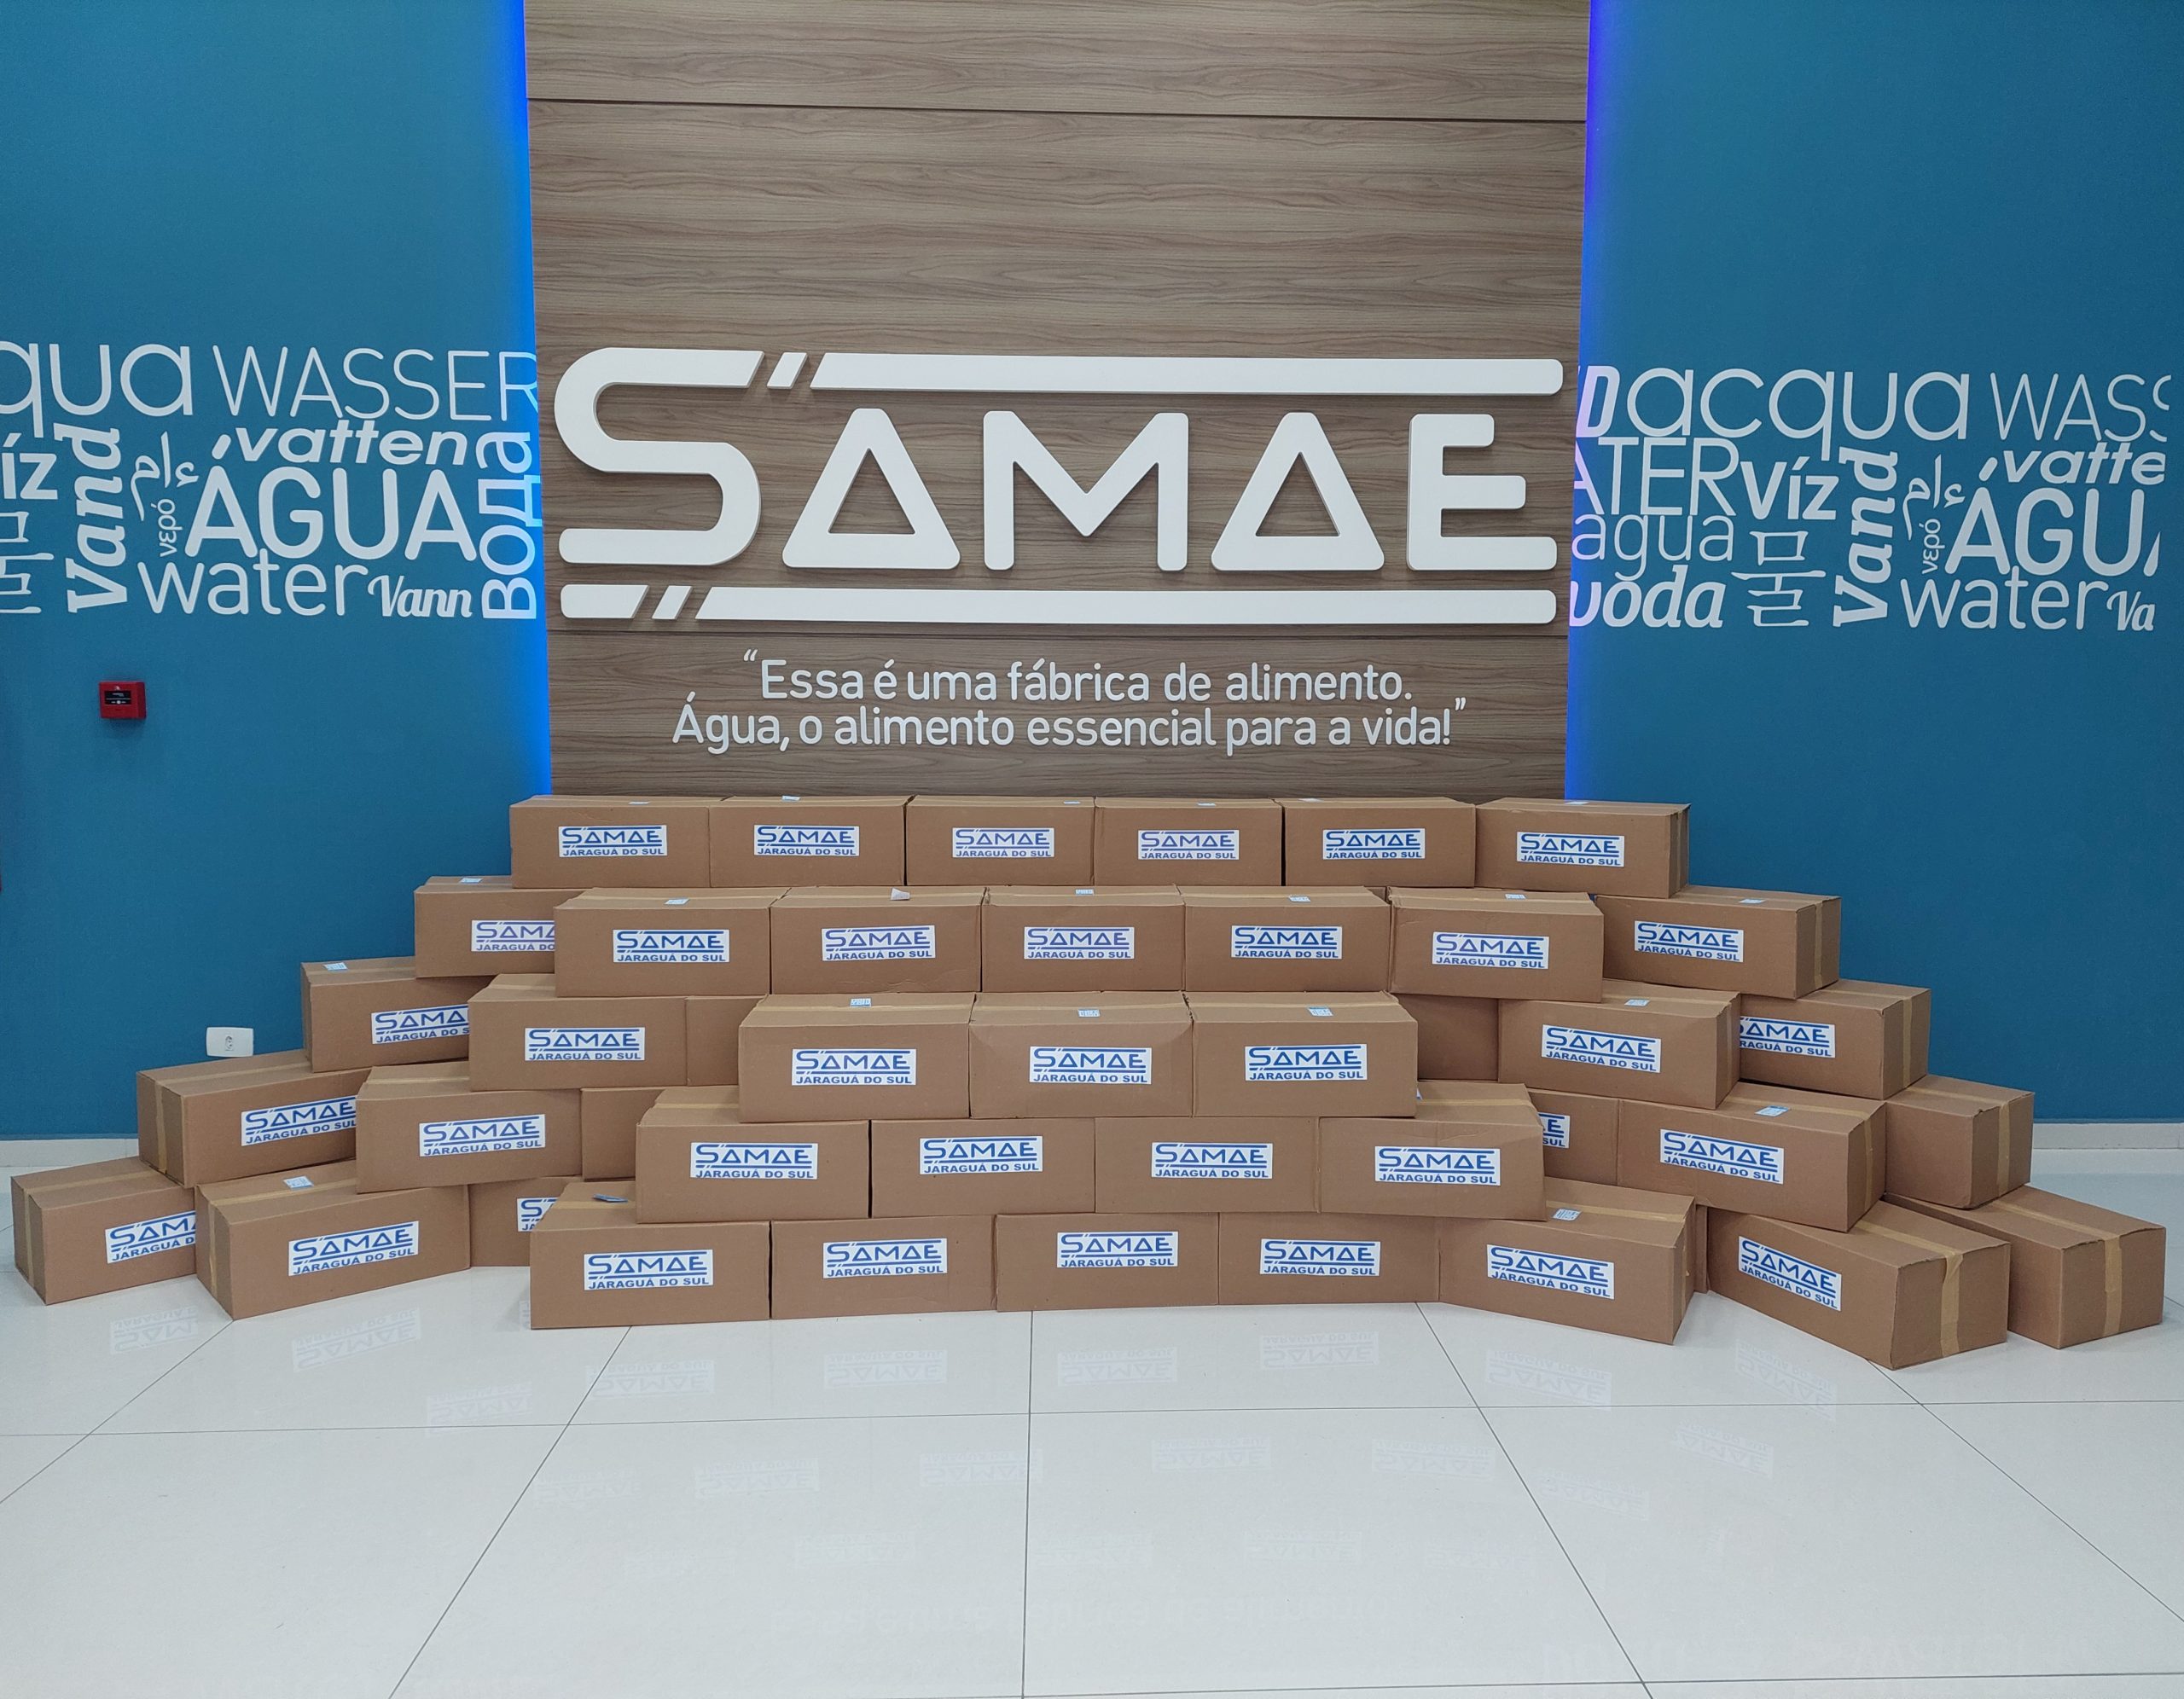 Samae enviará copos de água para a população afetada pelas enchentes no Rio Grande do Sul